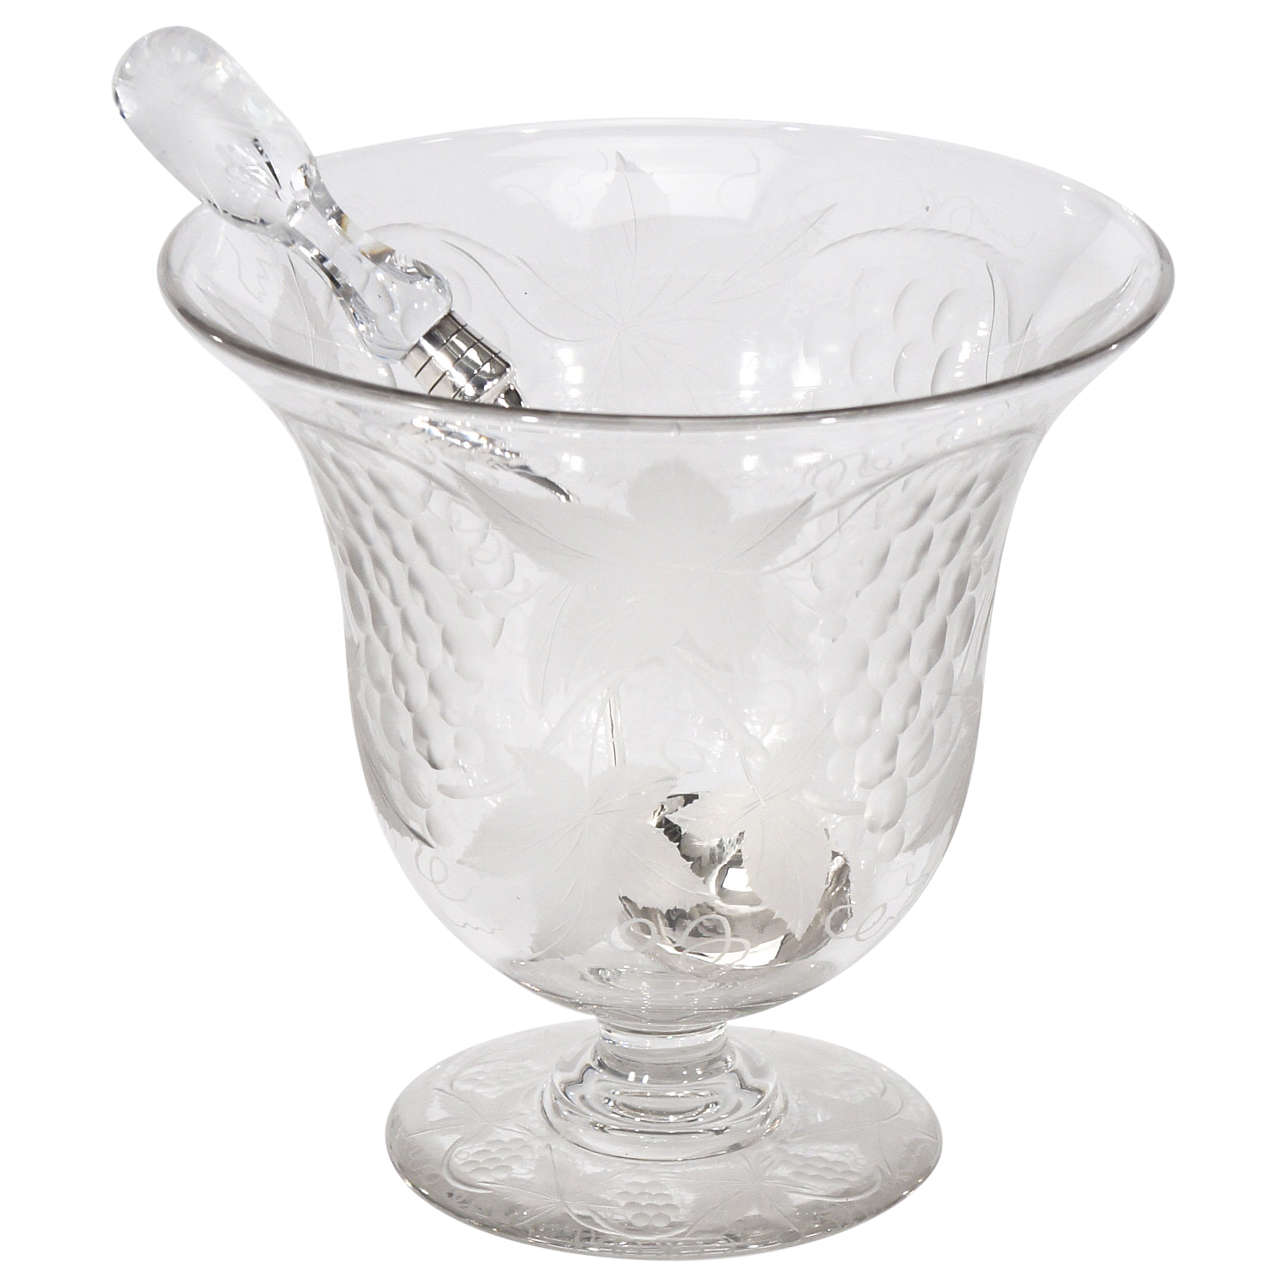 Rare punchbowl en cristal Pairpoint taillé à la roue avec louche signée assortie